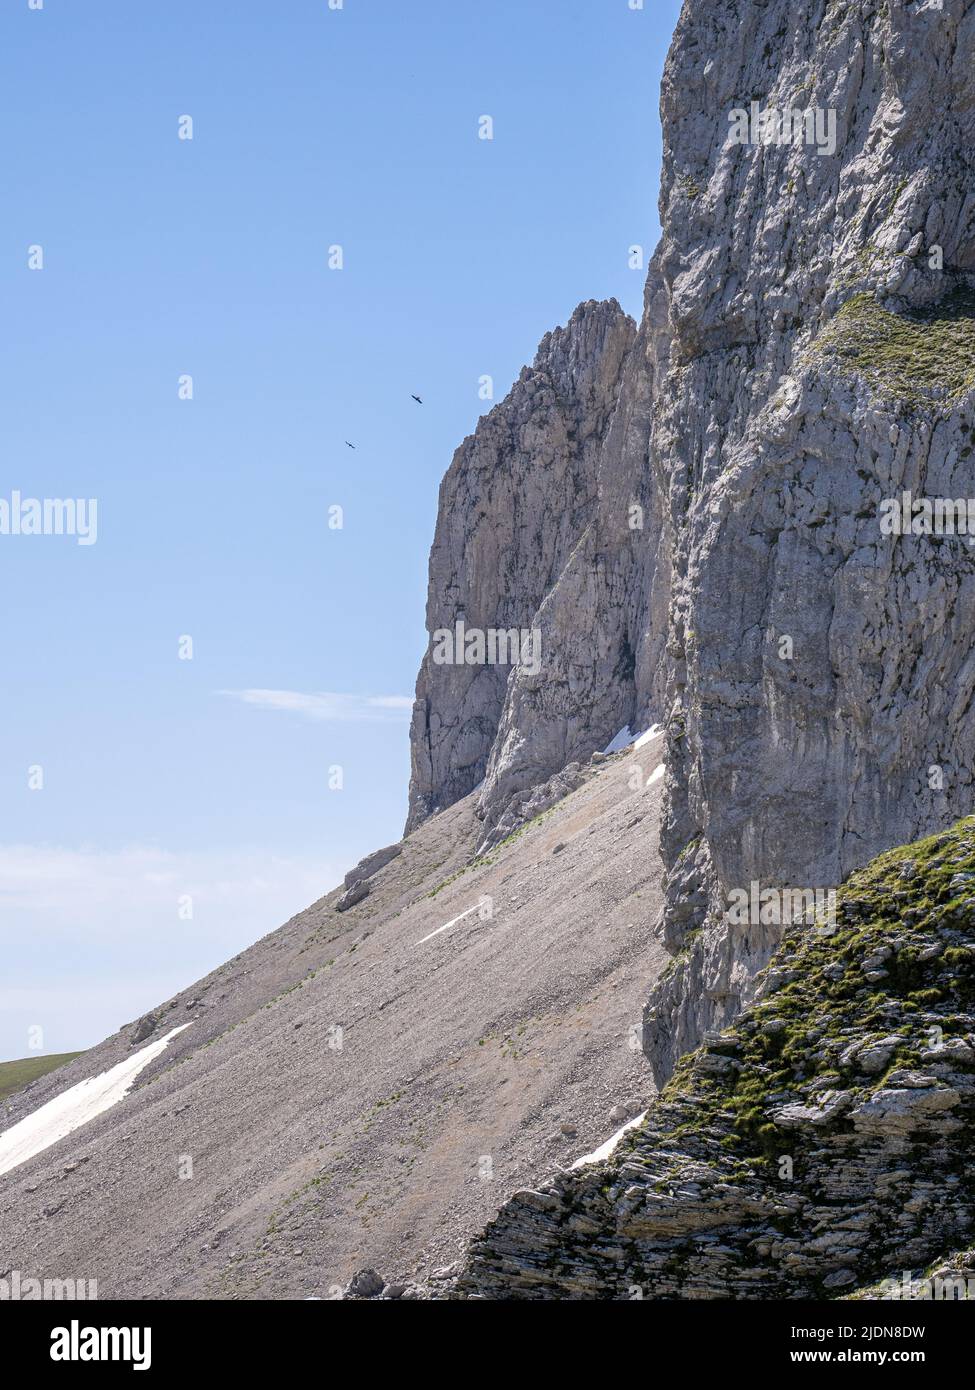 Die unzugängliche Nordwand des Mount Astraka einer der Gipfel des Timfi-Massivs in den Pindus Mountains im Norden Griechenlands Stockfoto